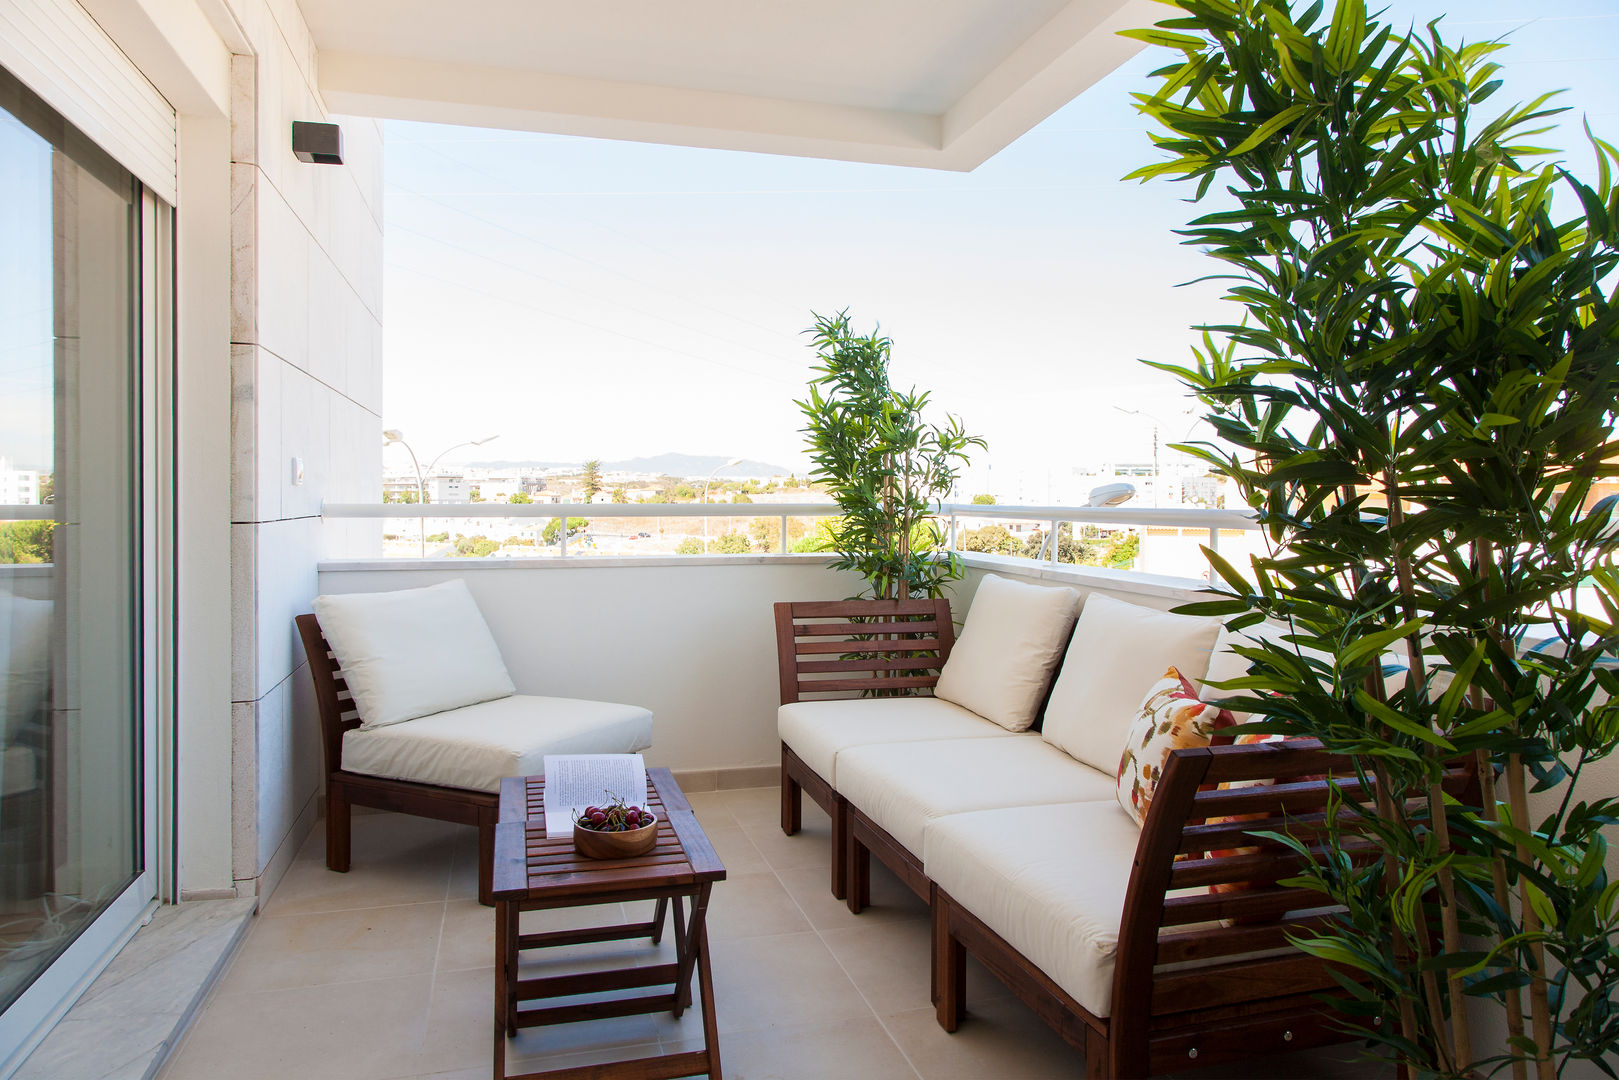 Andar Modelo - Oeiras, Traço Magenta - Design de Interiores Traço Magenta - Design de Interiores Modern style balcony, porch & terrace